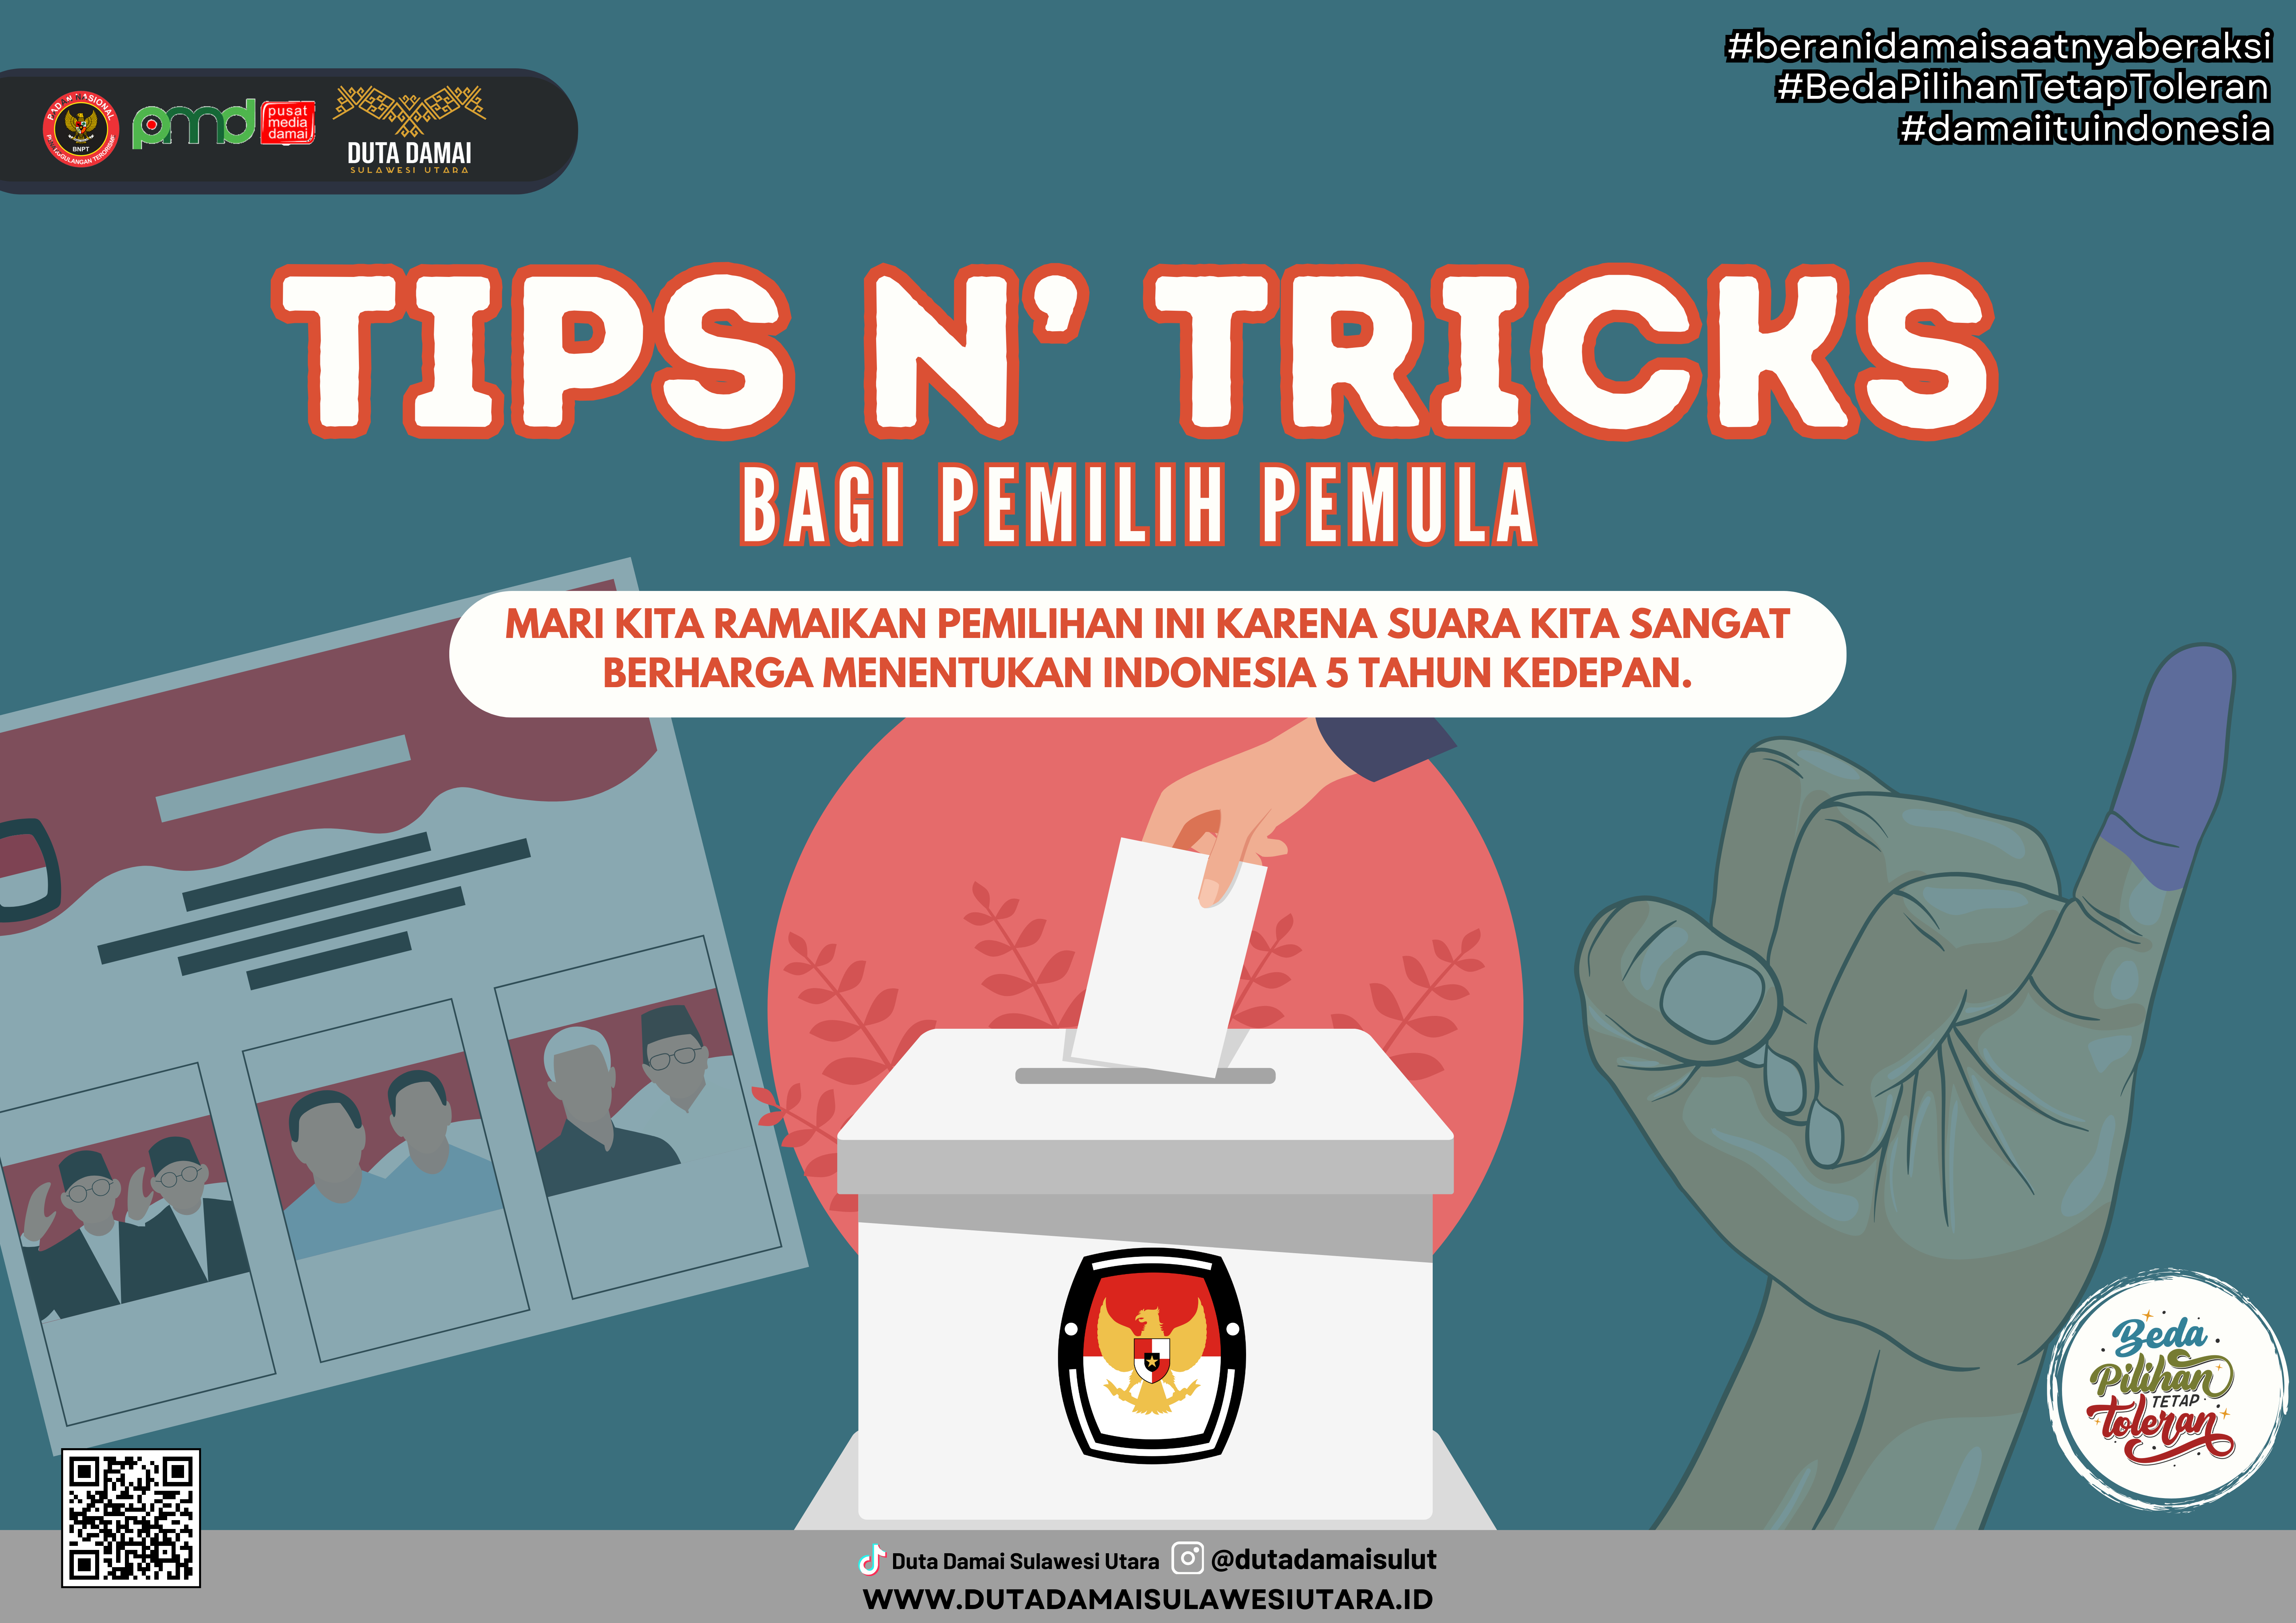 TIPS AND TRICKS BAGI PEMILIH PEMULA 